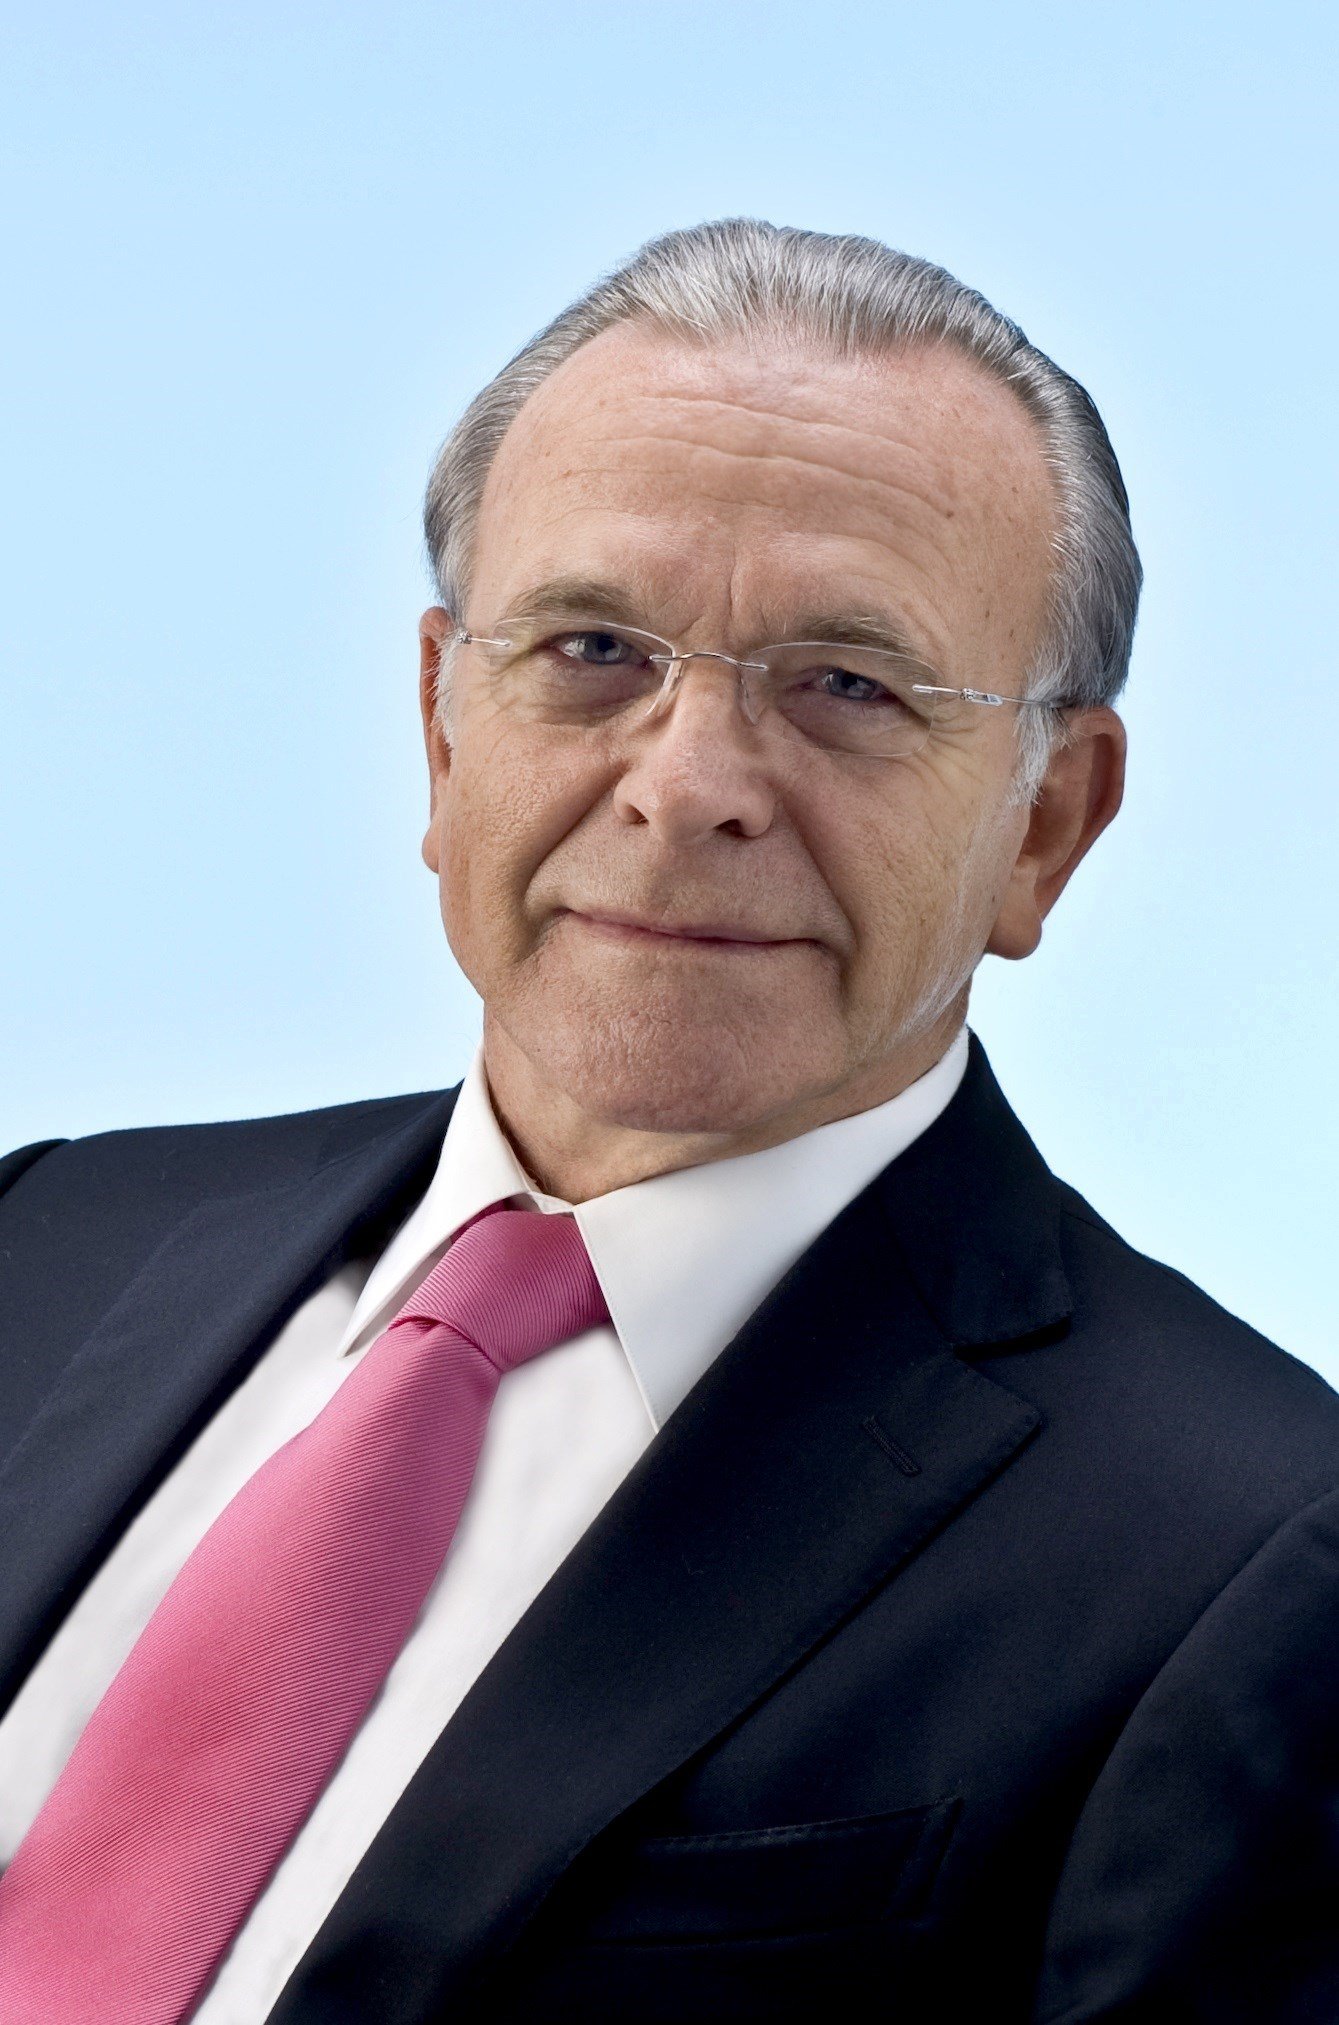 La Fundació Thyssen-Bornem nomena Fainé patró governamental